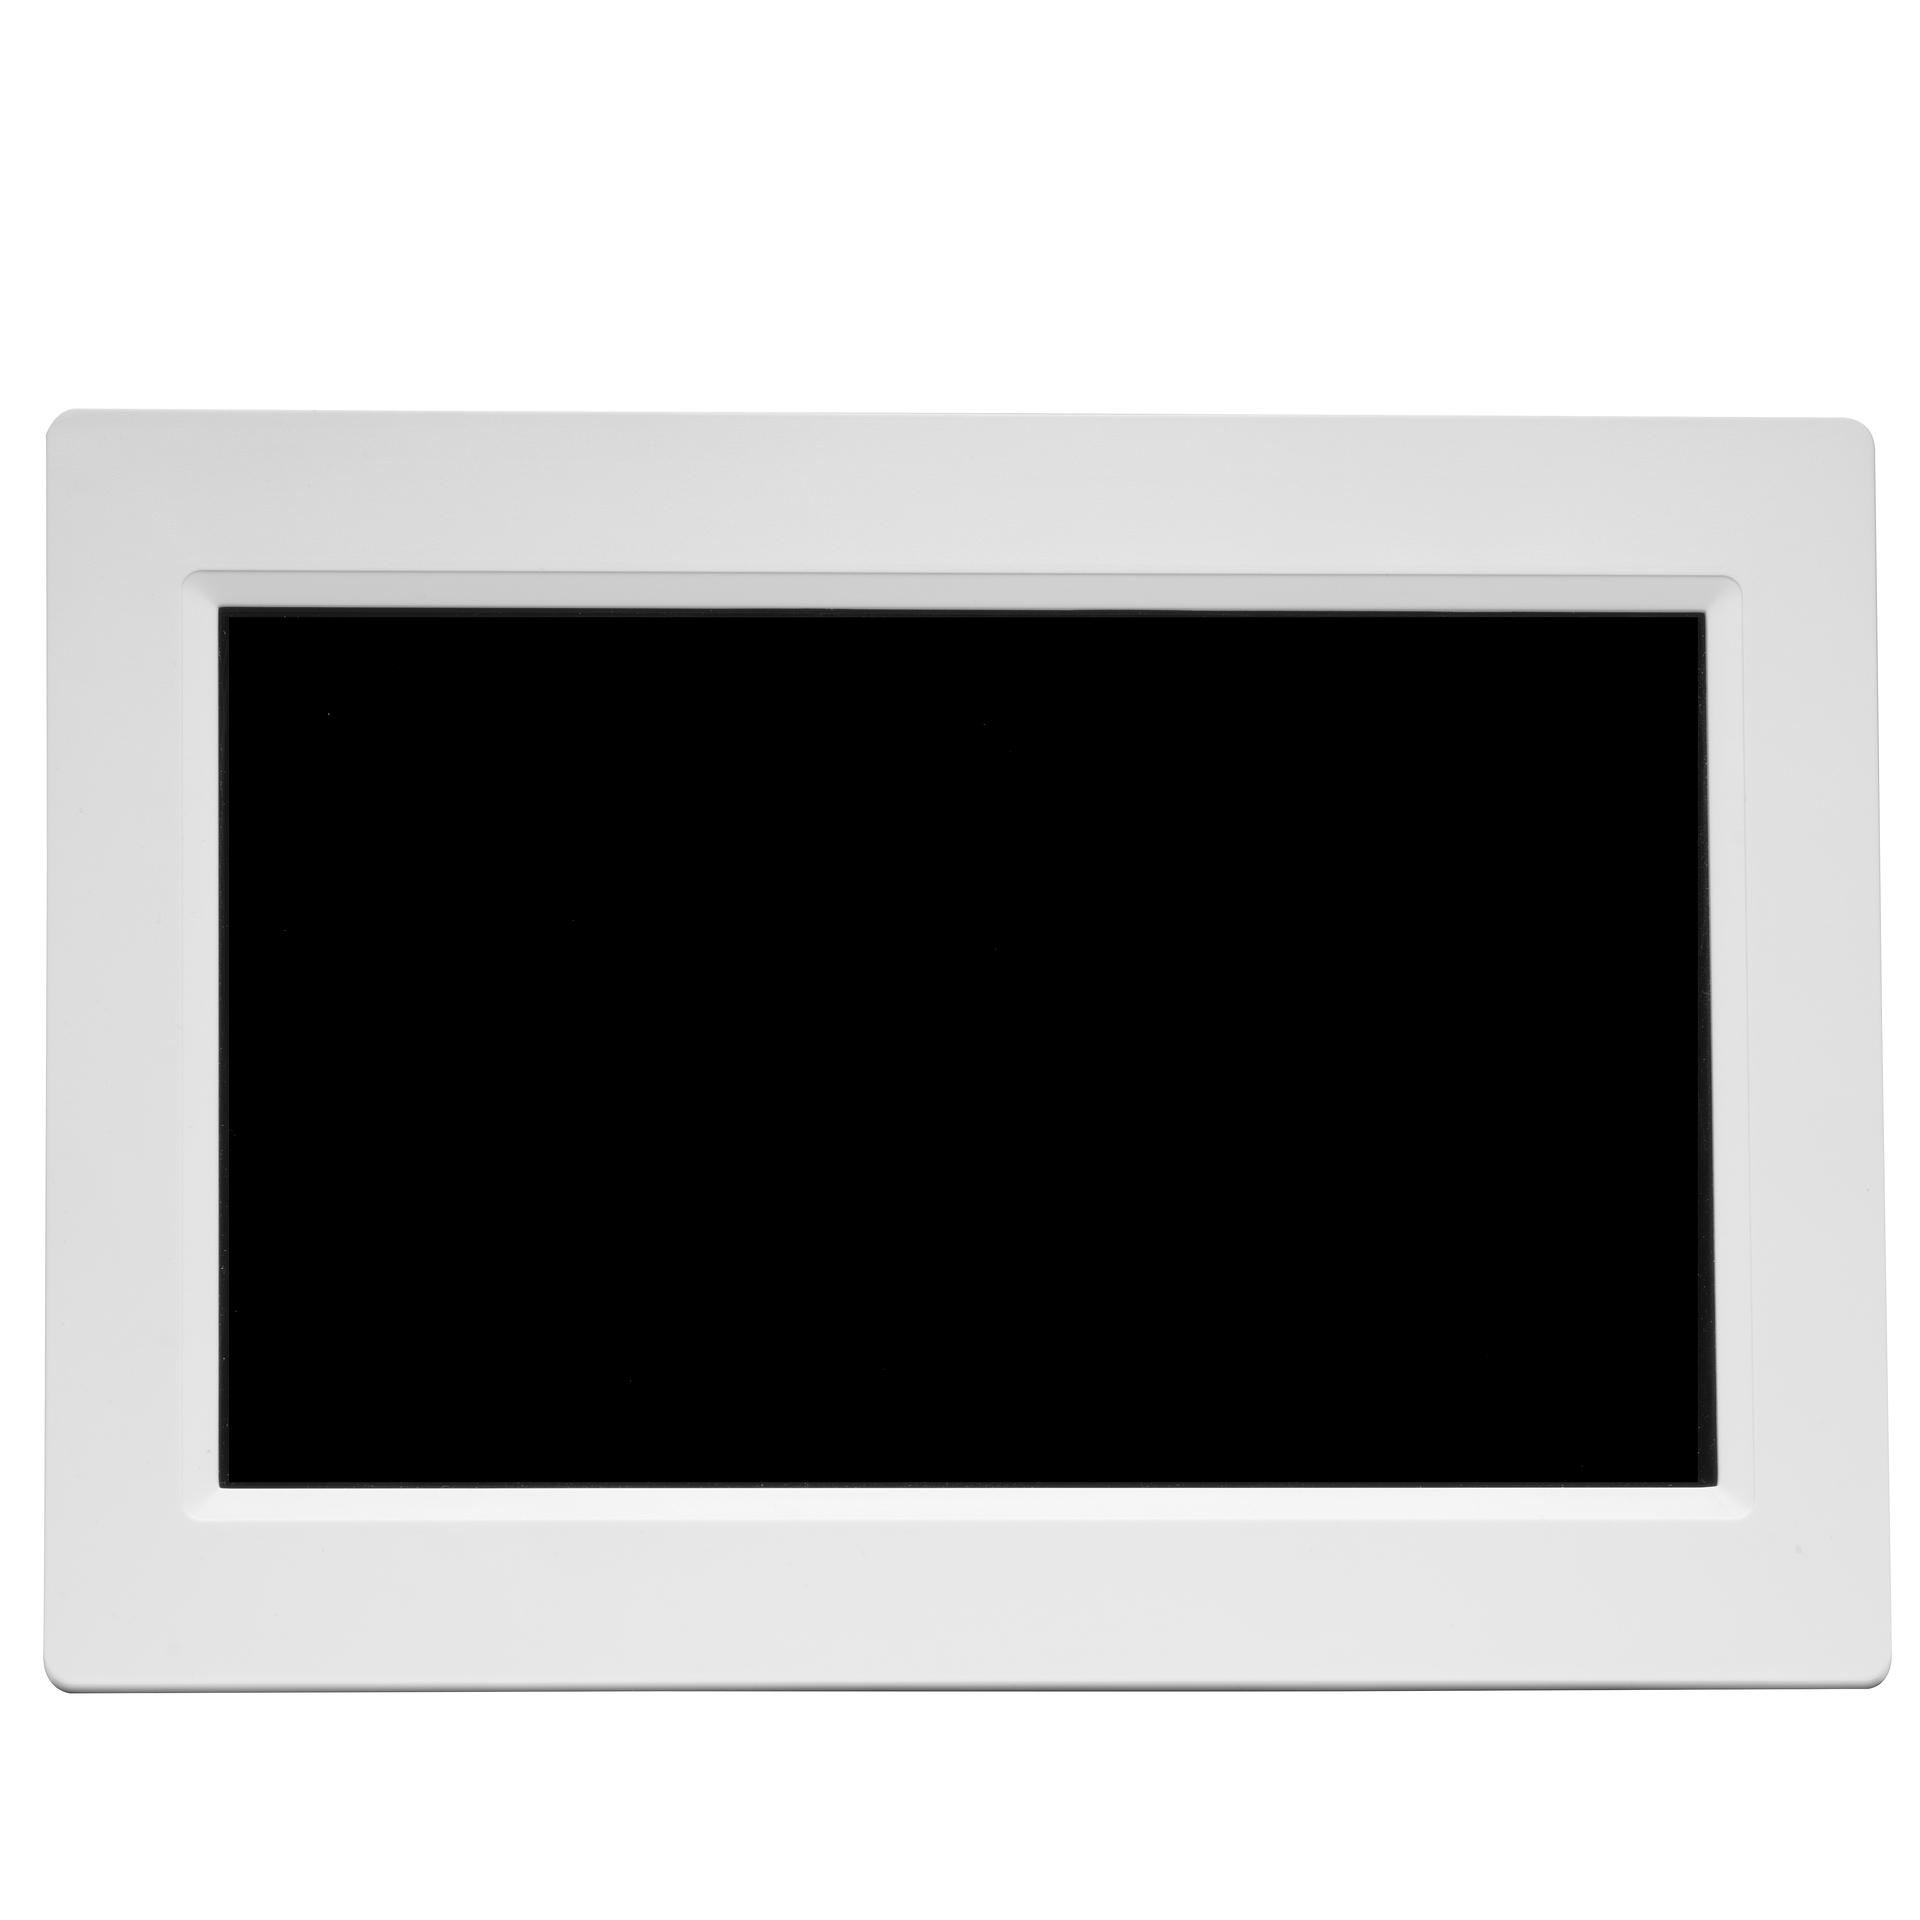 DENVER PFF-1015 Monitor, 25,65 cm, 1280 weiß x 800